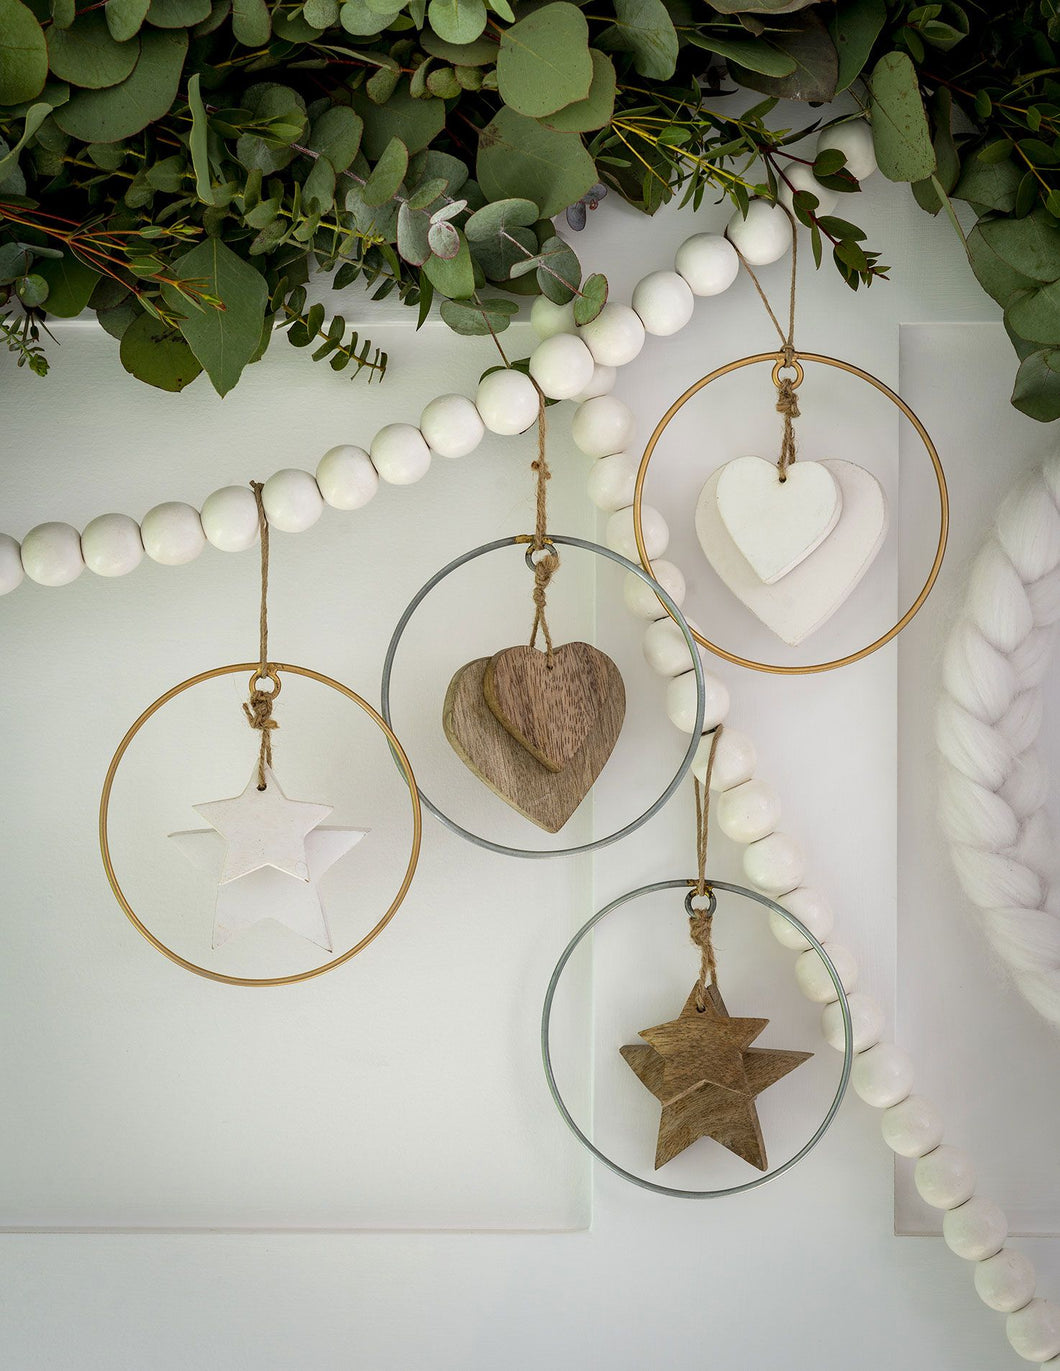 Wood & metal hoop hangers … 4 designs